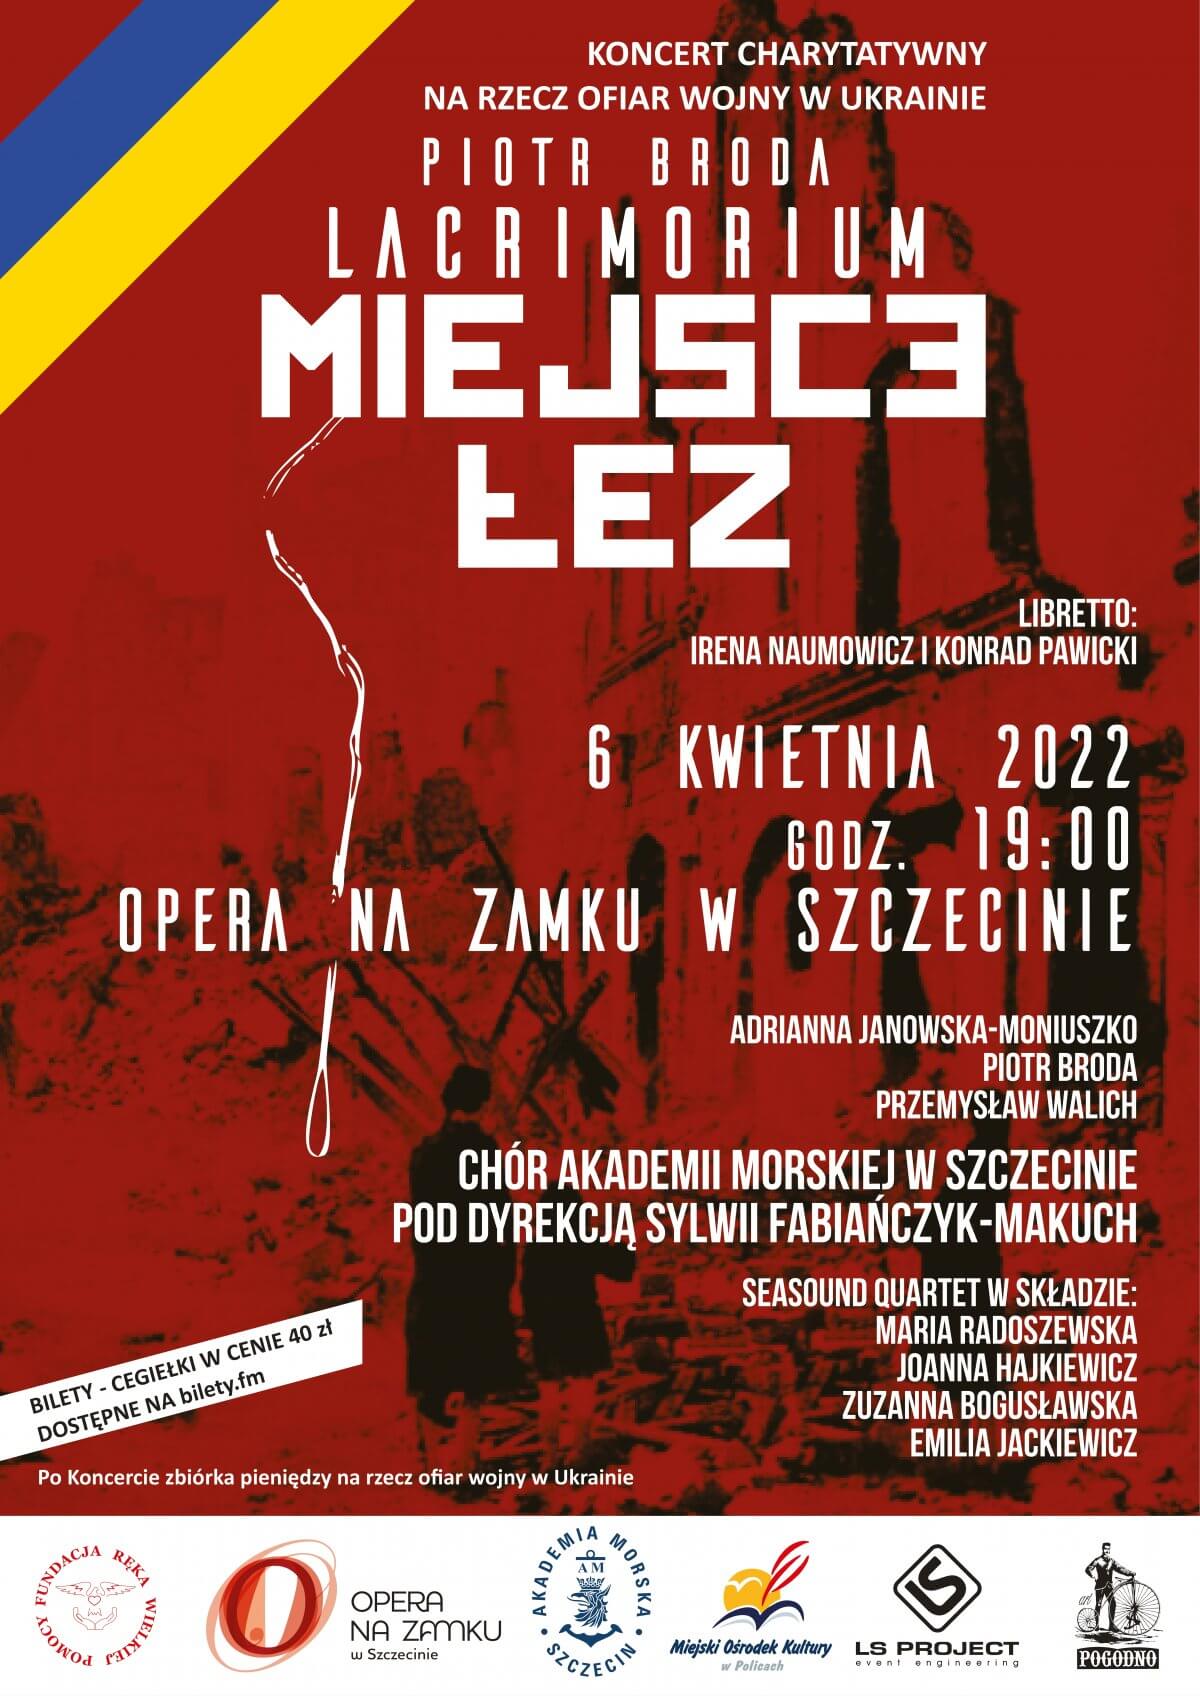 Czerwone tło białe napisywskazujące miejsce i godzinę wydarzenia i artystów występujących podczas koncertu.Z lewej górnej strony grafiki niebiesko-żółta (barwy flagi Ukrainy).